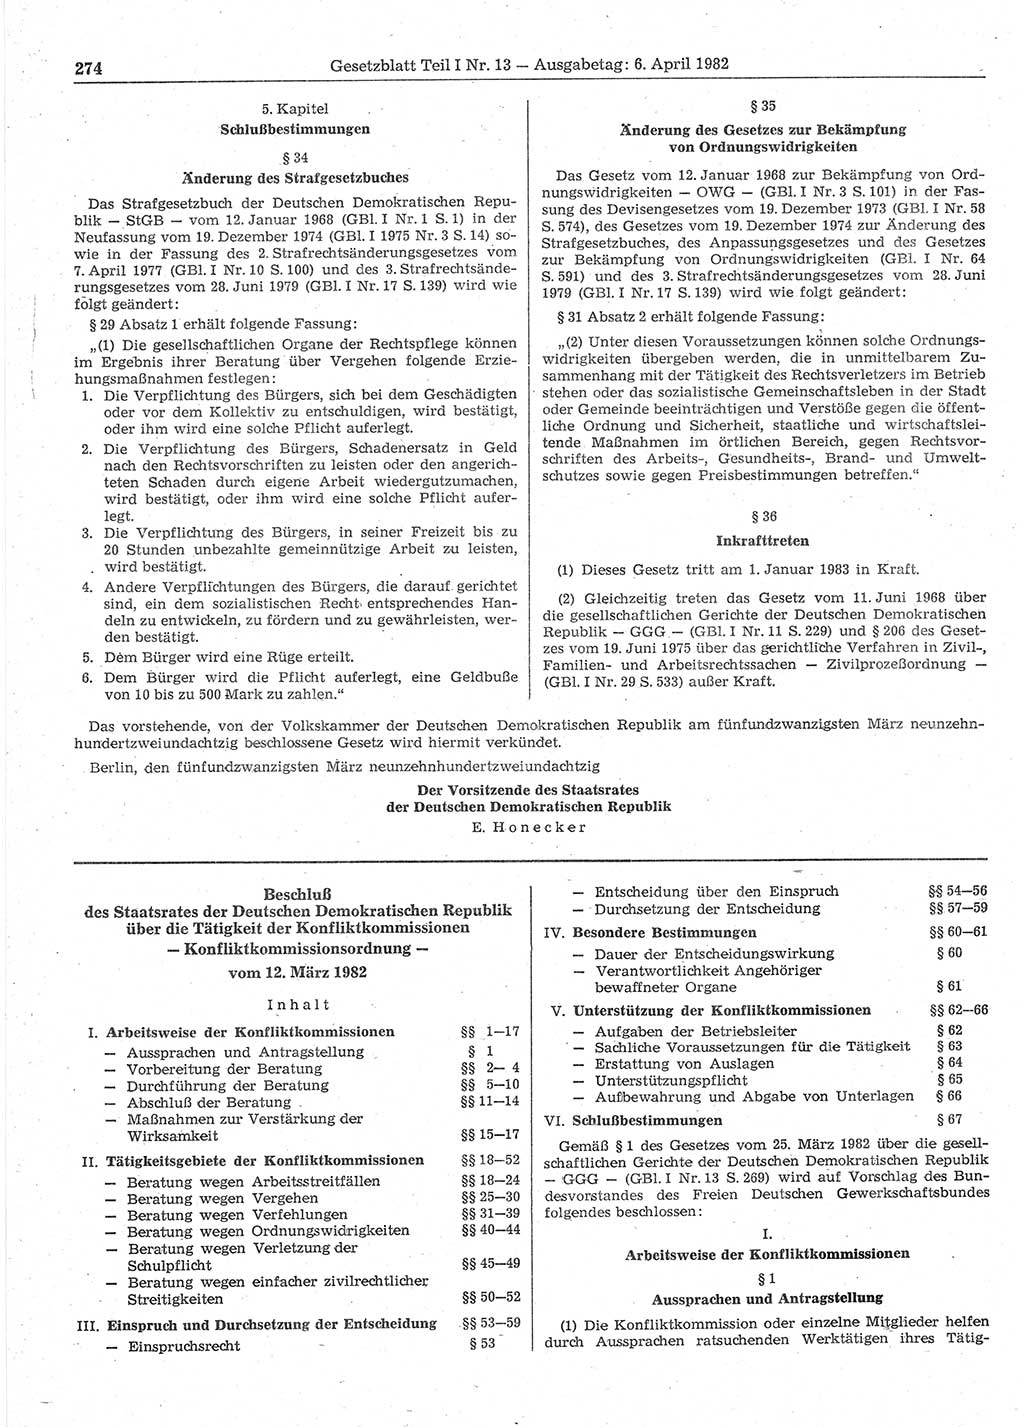 Gesetzblatt (GBl.) der Deutschen Demokratischen Republik (DDR) Teil Ⅰ 1982, Seite 274 (GBl. DDR Ⅰ 1982, S. 274)